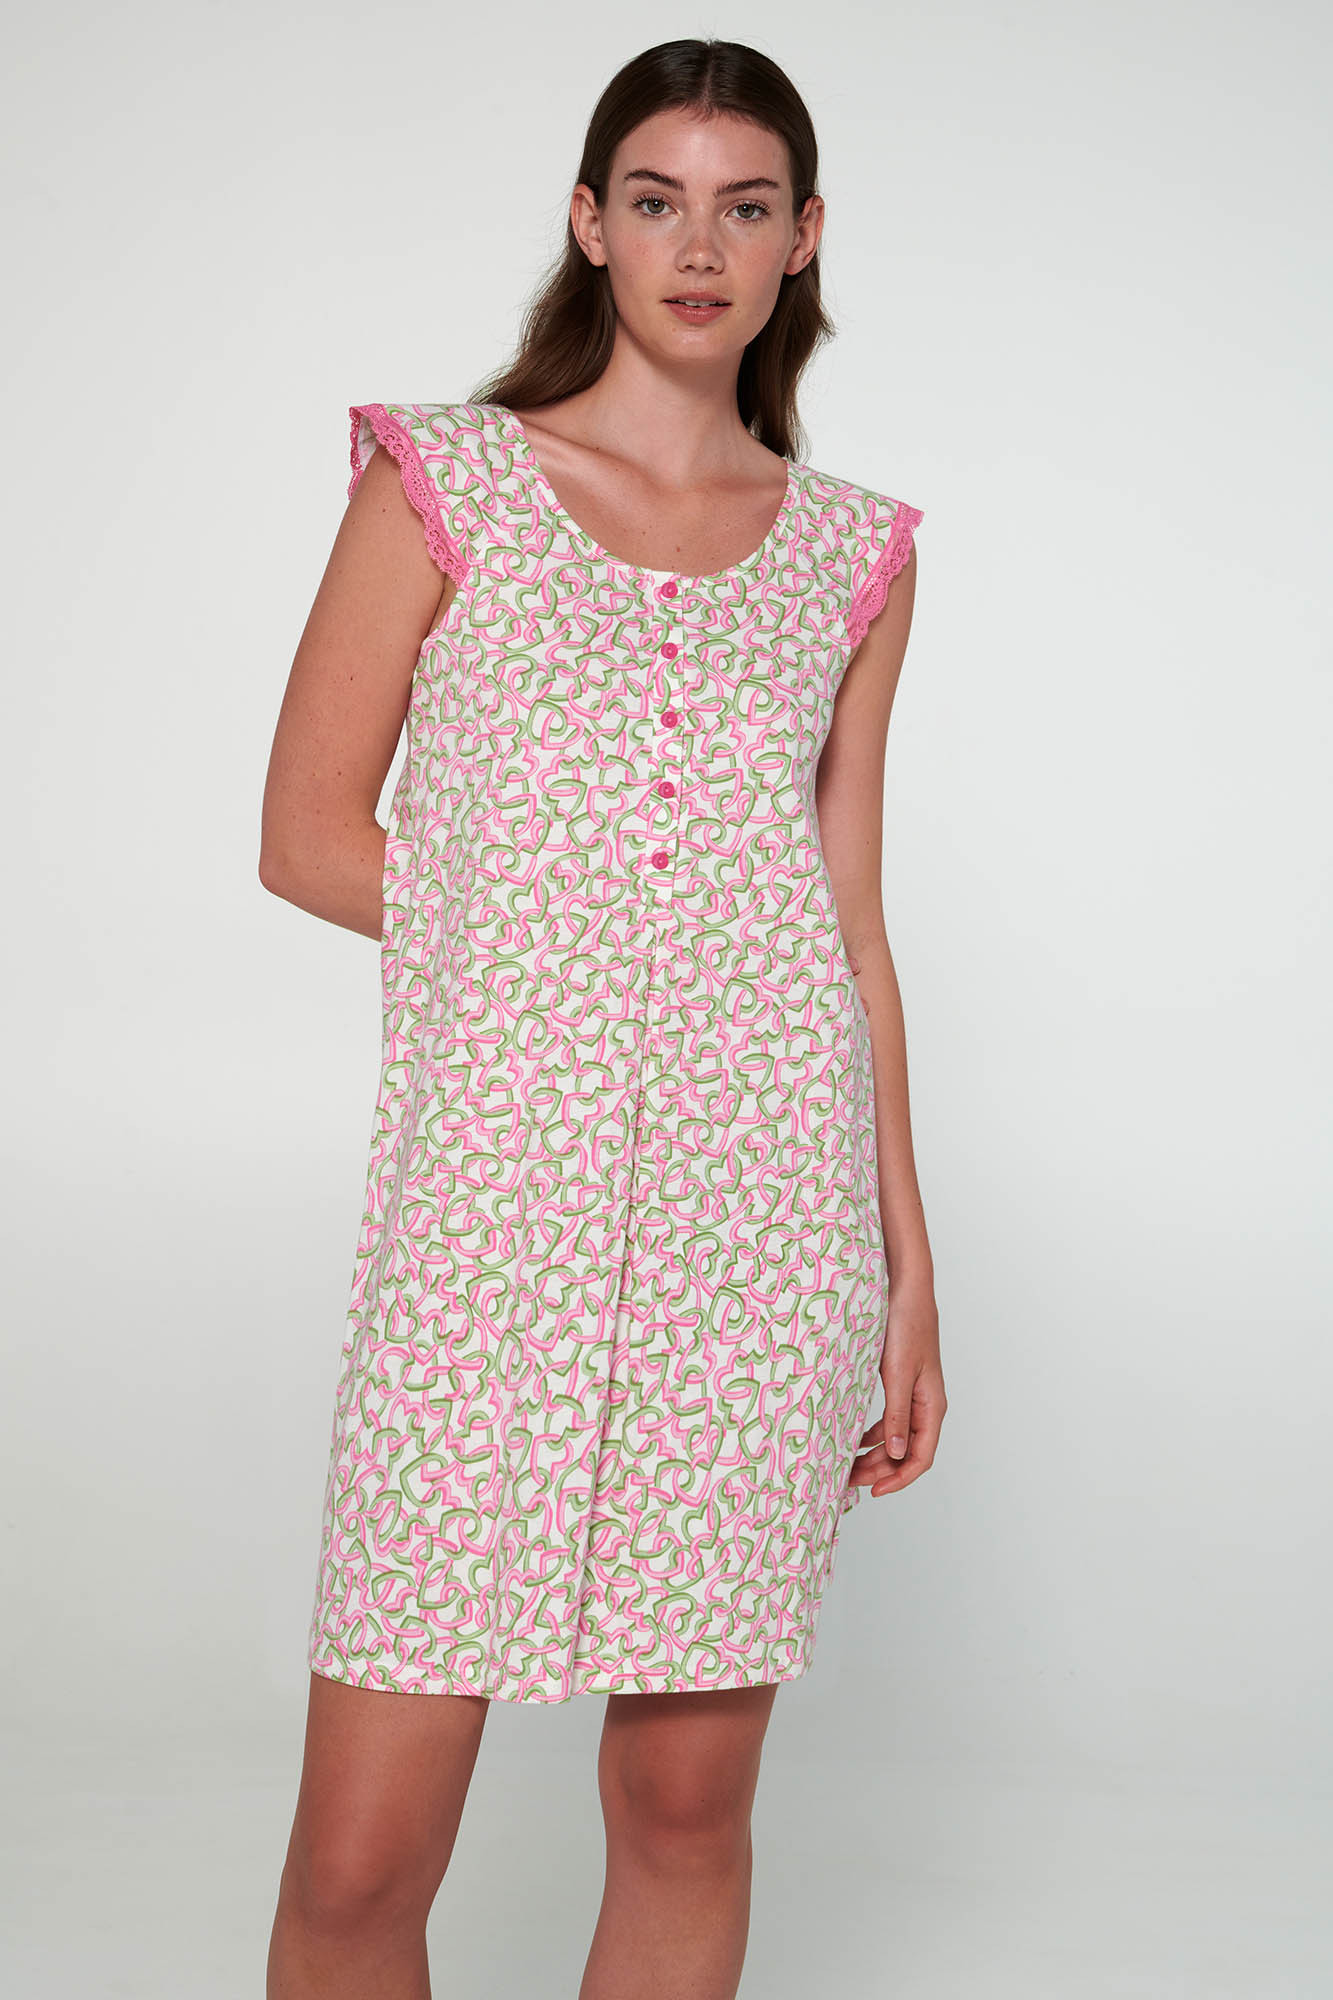 Vamp - Noční košile s knoflíkovou légou 20250 - Vamp fuchsia pink 5XL